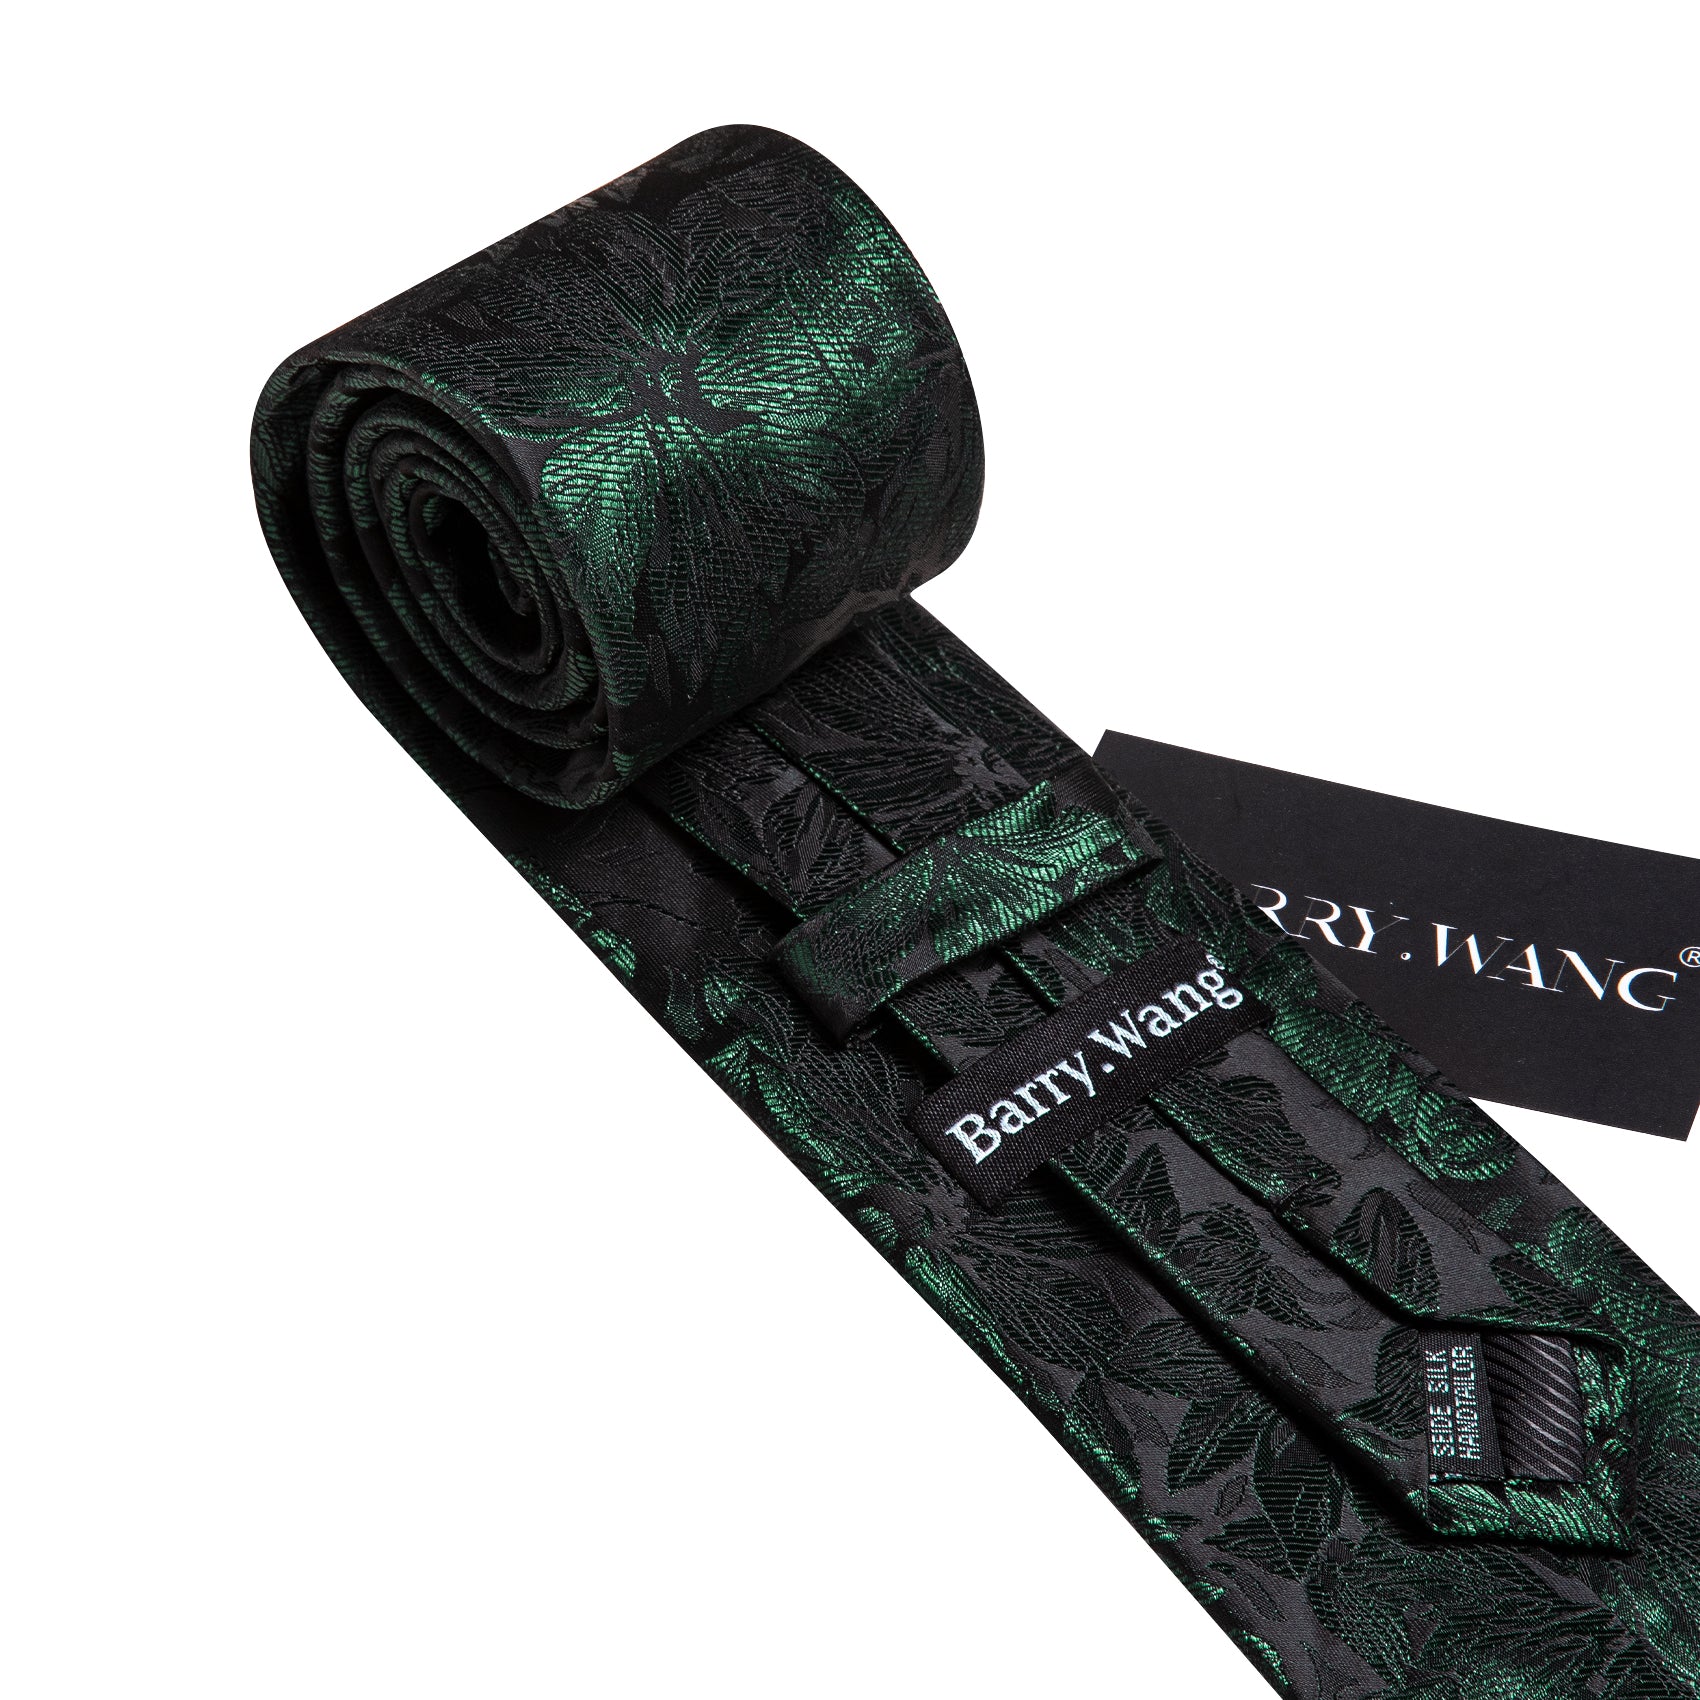 Black Tie Green Flower Silk Tie Pocket Square Cufflinks Set